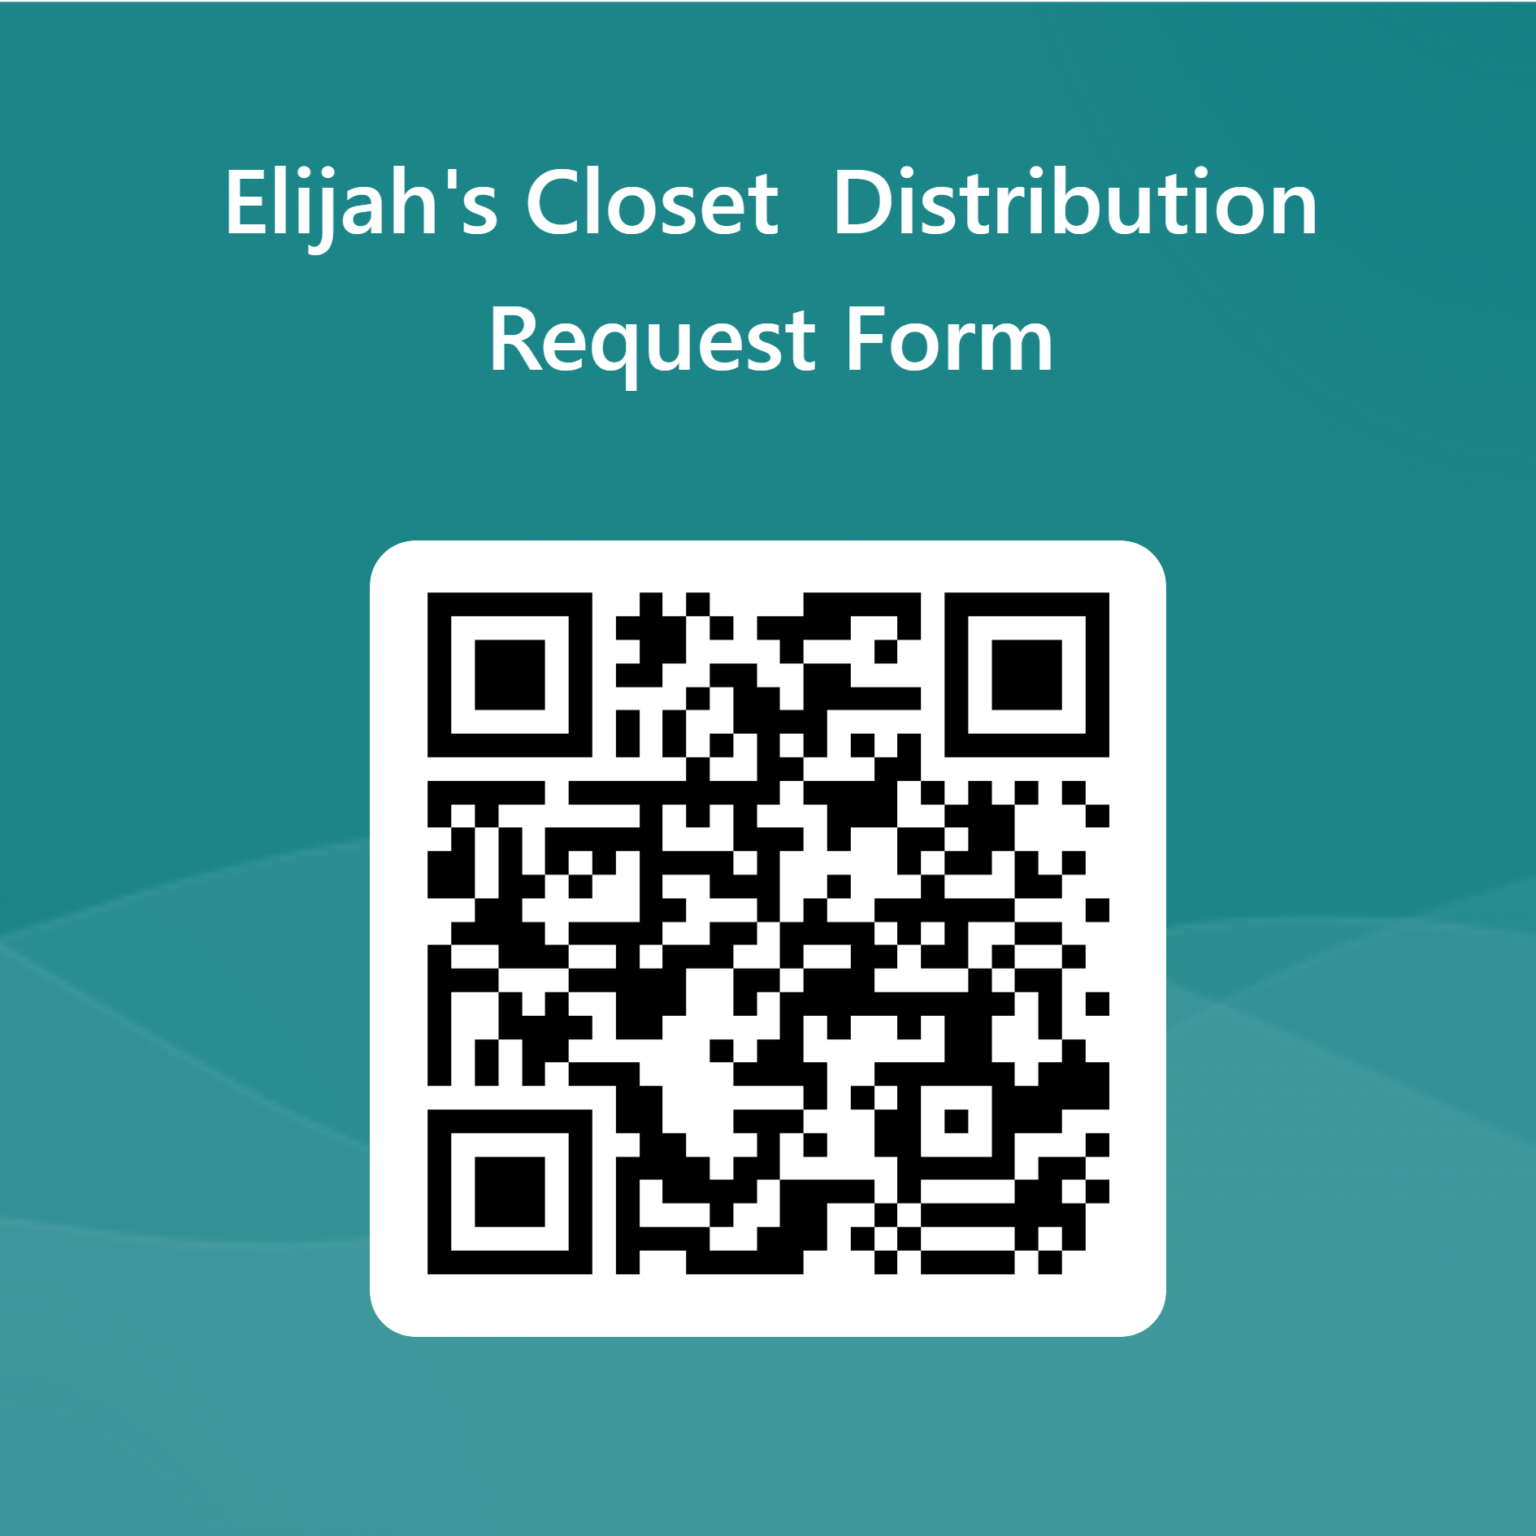 elijahs closet distribution request form qr code